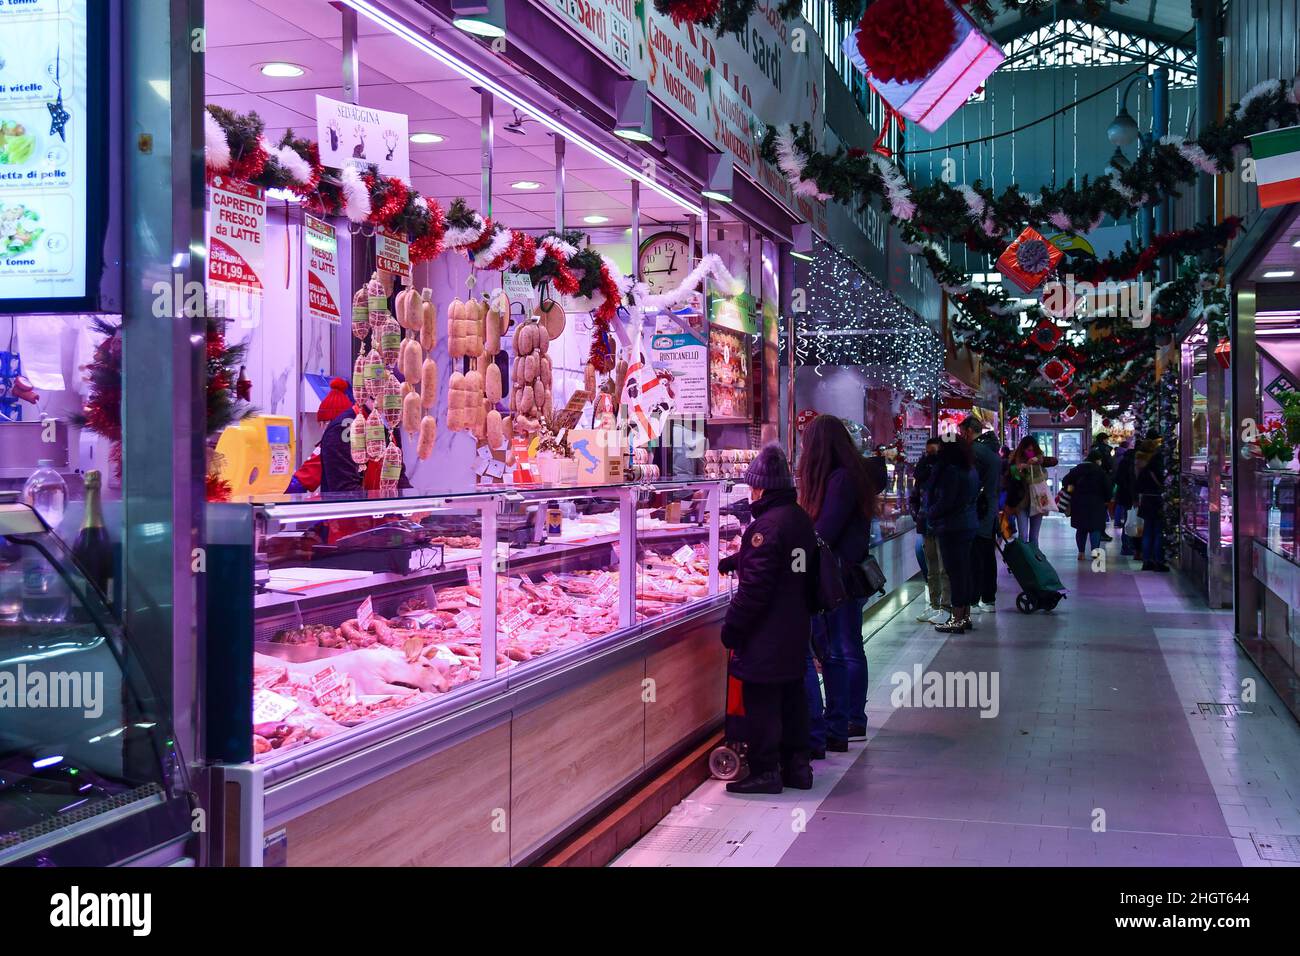 Persone che acquistano nel mercato coperto 'Antica Tettoia dell'Orologio' di porta Palazzo in Piazza della Repubblica, Torino, Piemonte, Italia Foto Stock